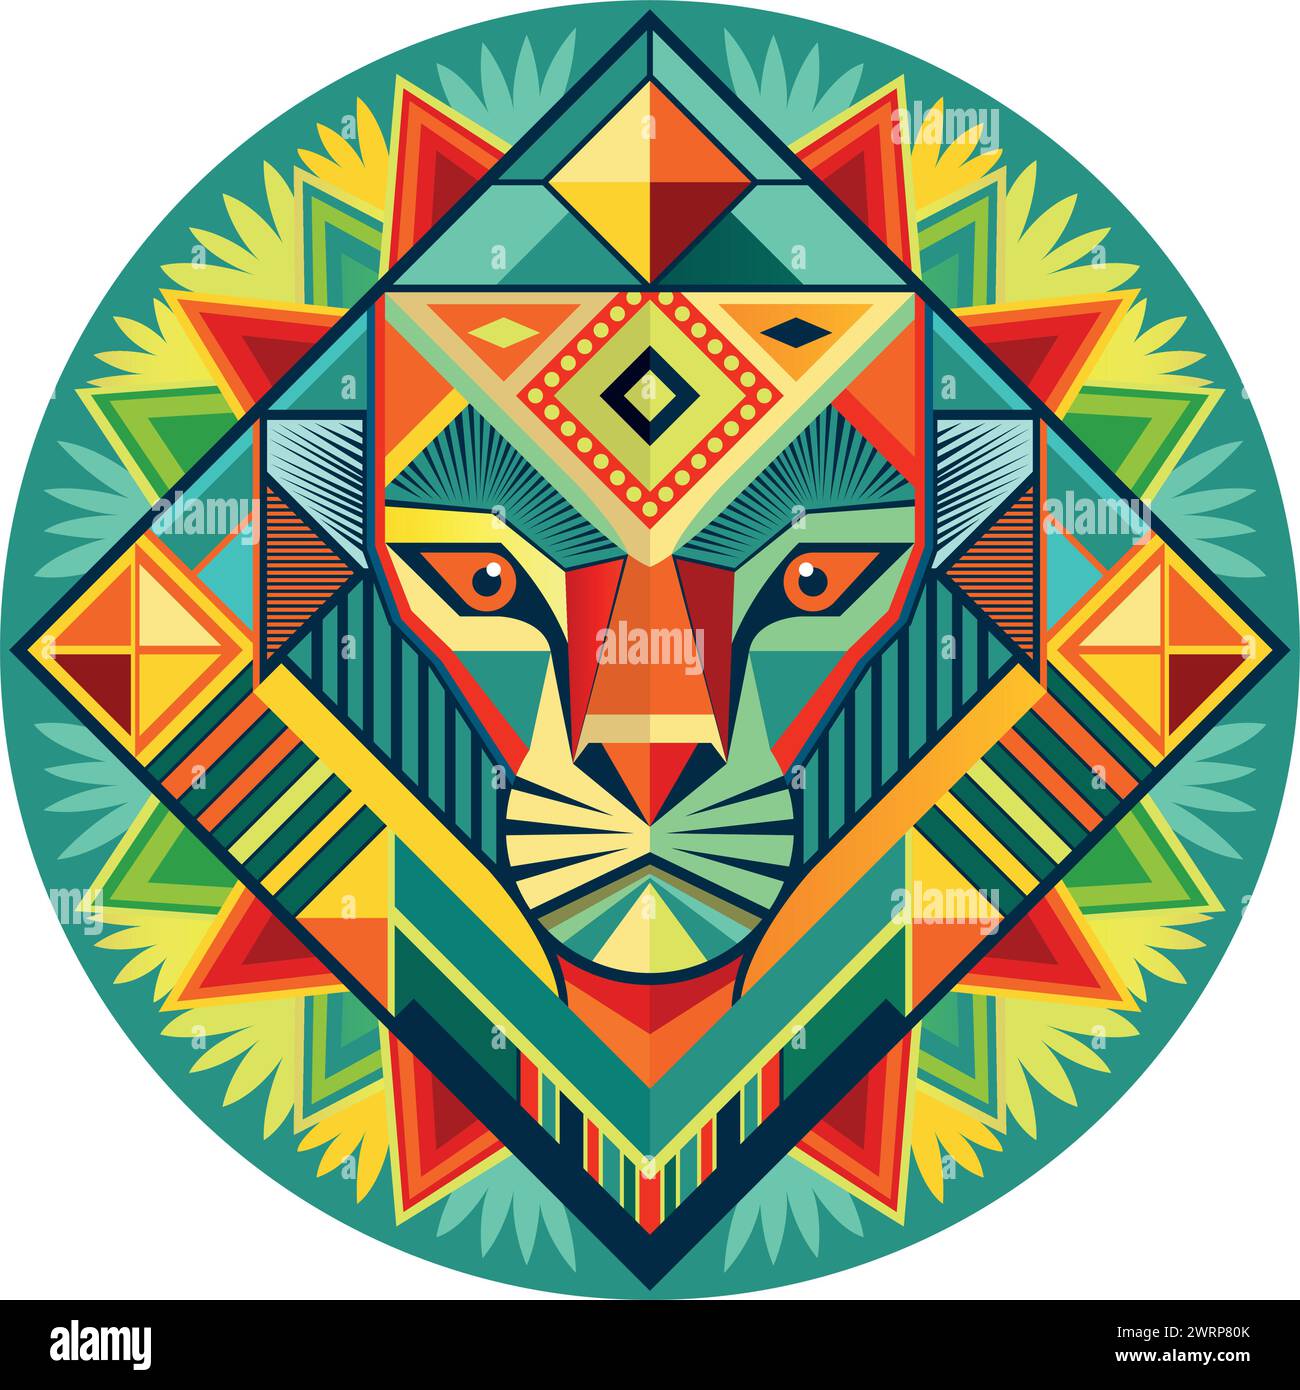 Vue de face du masque africain en forme de tête de lion dans un style géométrique avec des couleurs chaudes. Image vectorielle Illustration de Vecteur